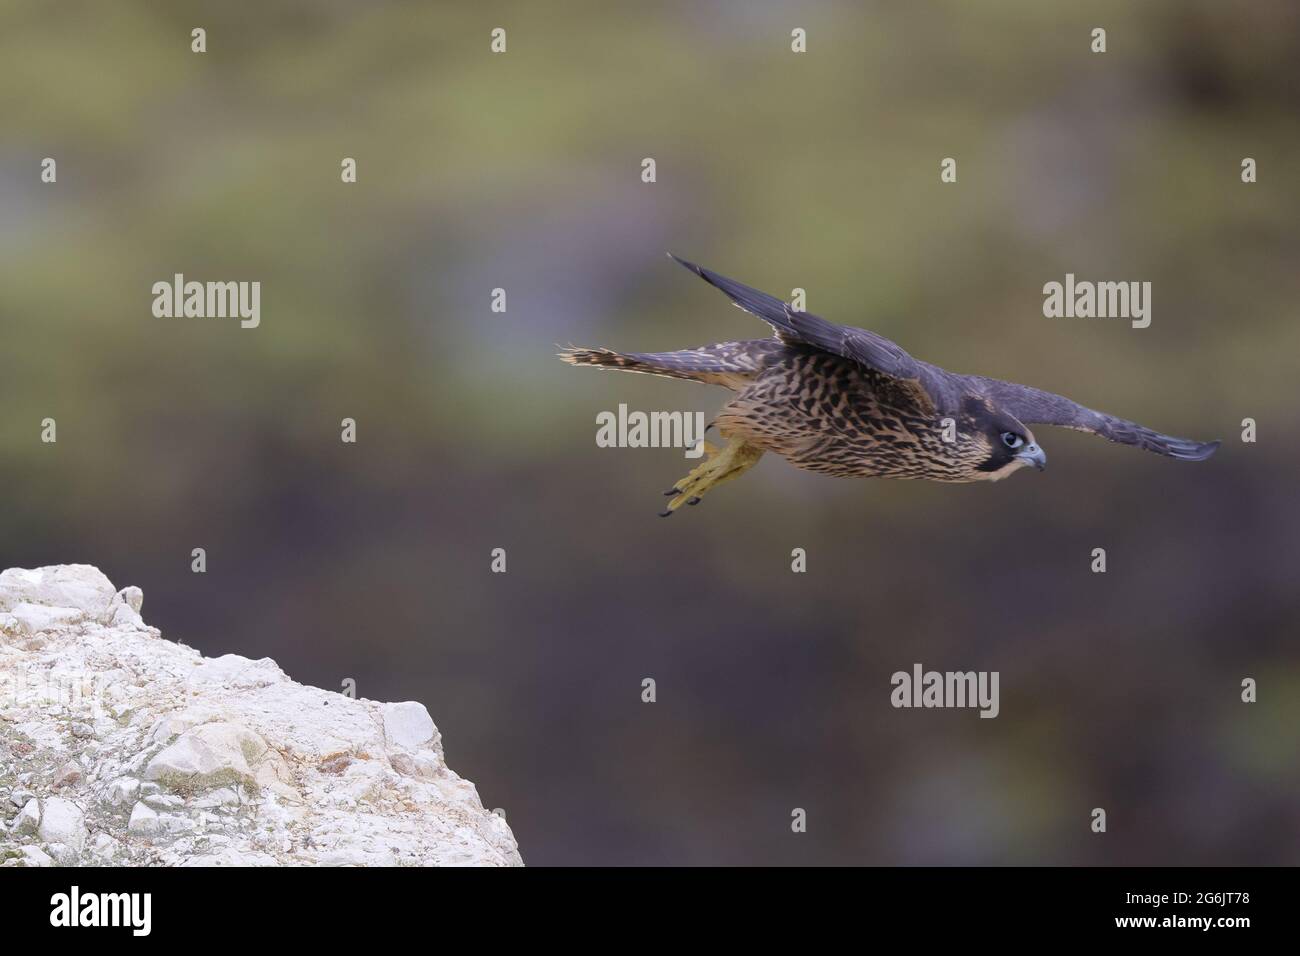 Le faucon pèlerin, aussi connu sous le nom de faucon pèlerin, et historiquement sous le nom de faucon de canard en Amérique du Nord, est un oiseau de proie répandu. Banque D'Images